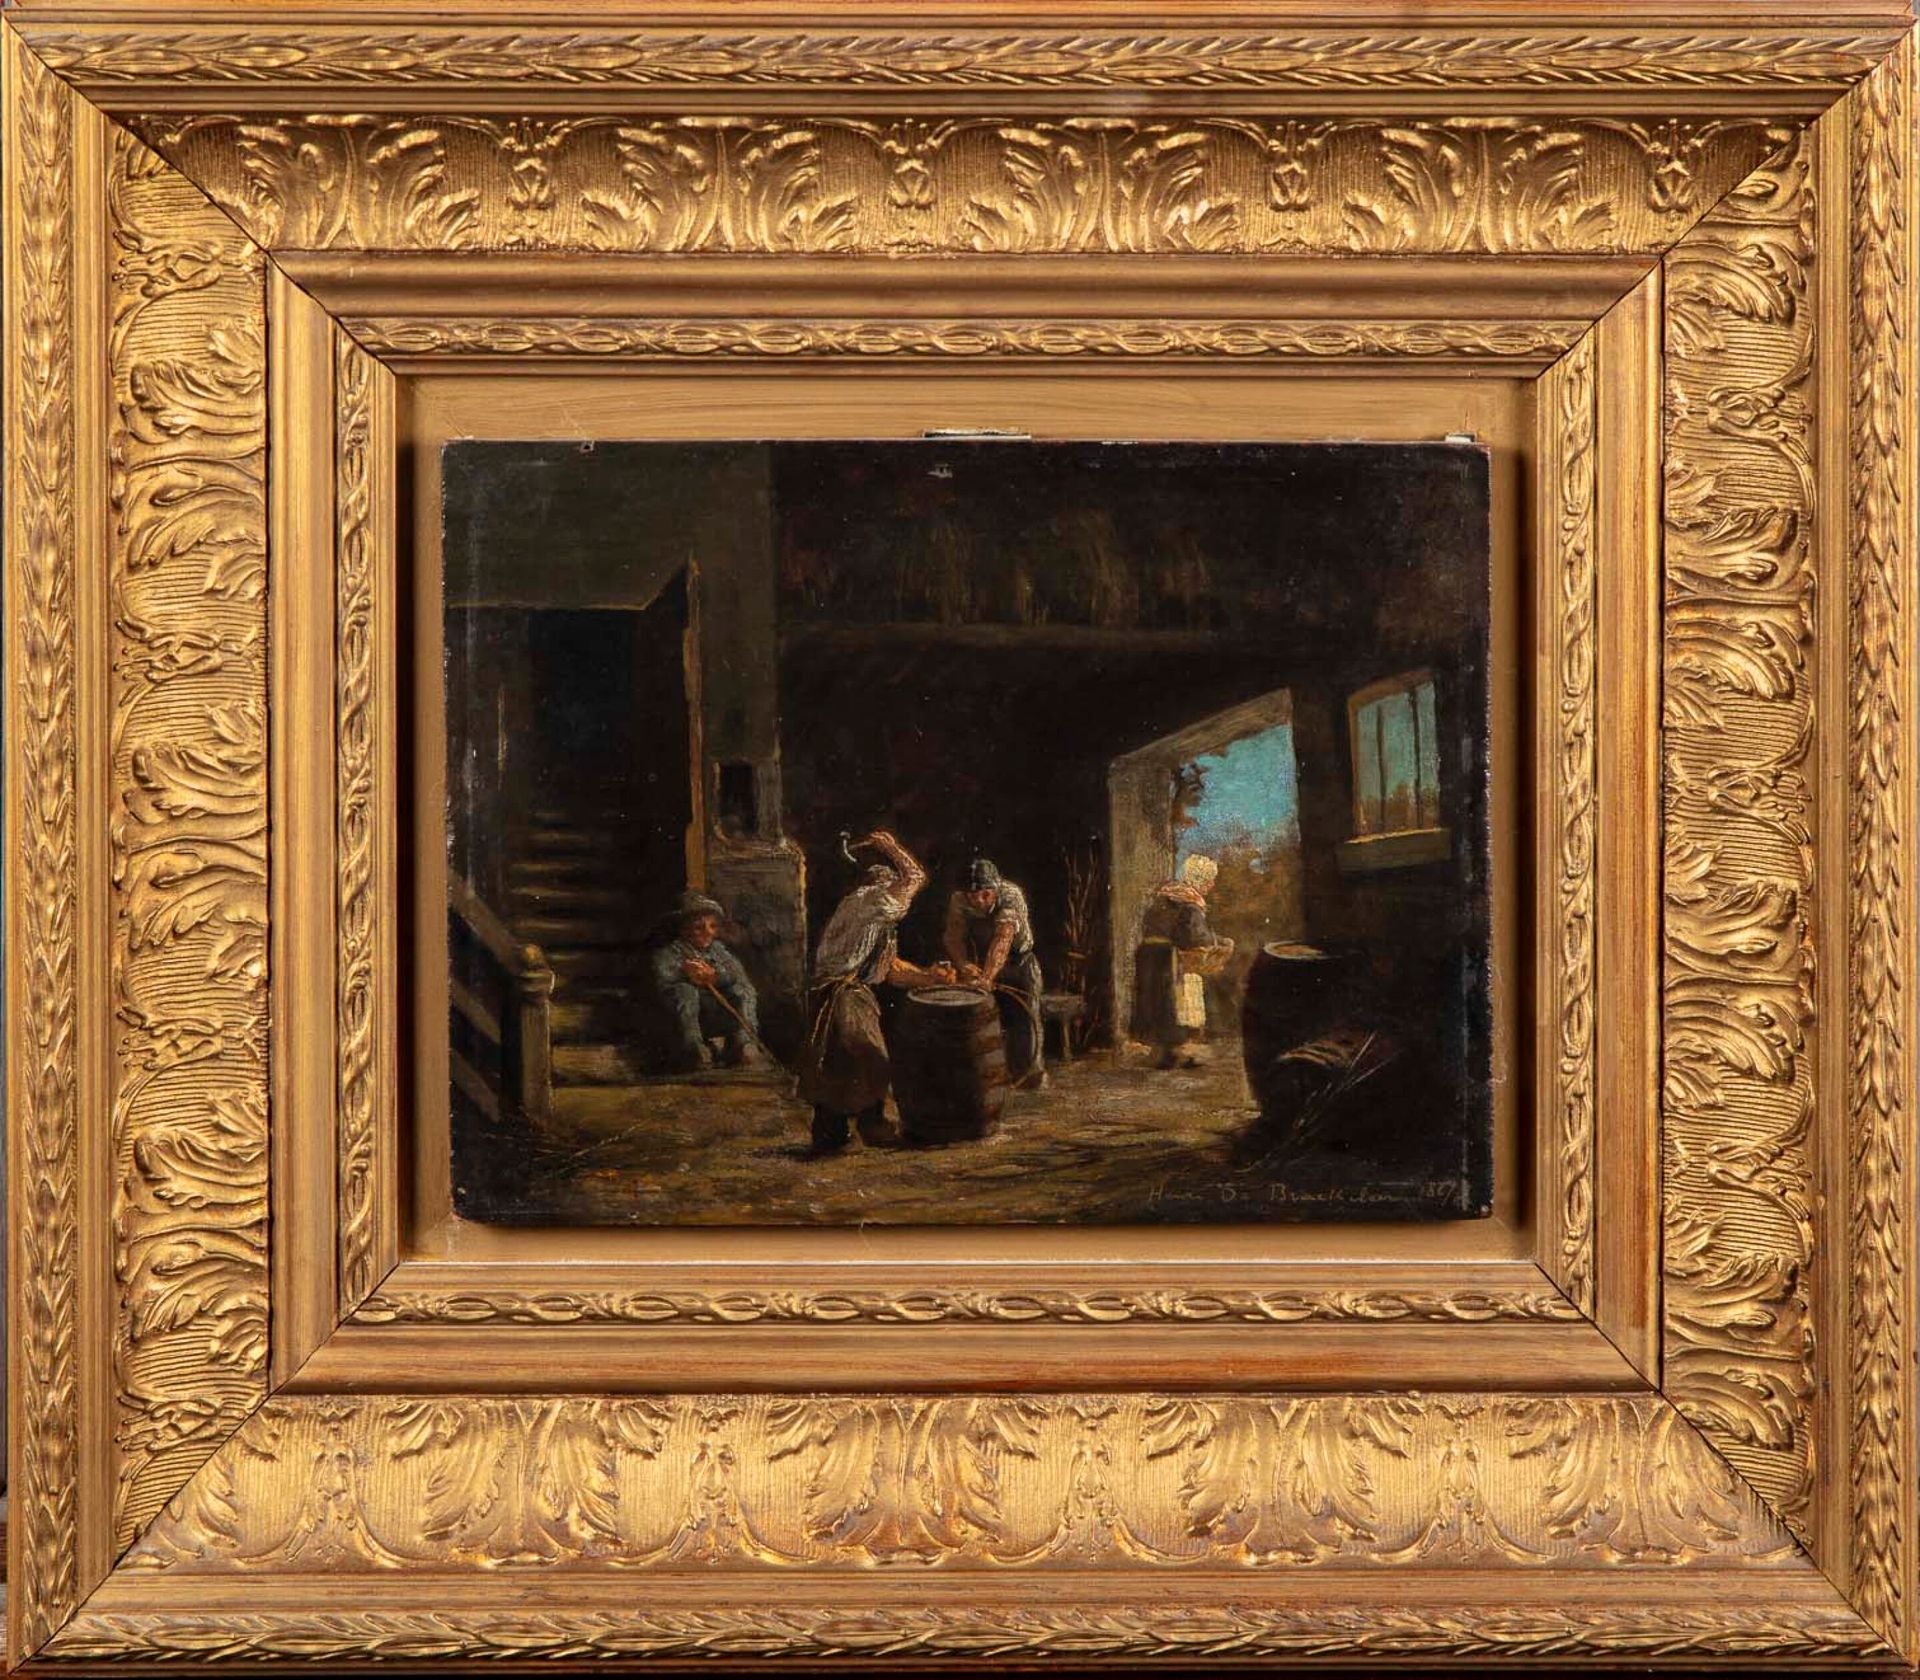 BRAEKELLER Henri de BRAEKELLER (1840-1888)

Das Innere einer Schmiede

Öl auf Pl&hellip;